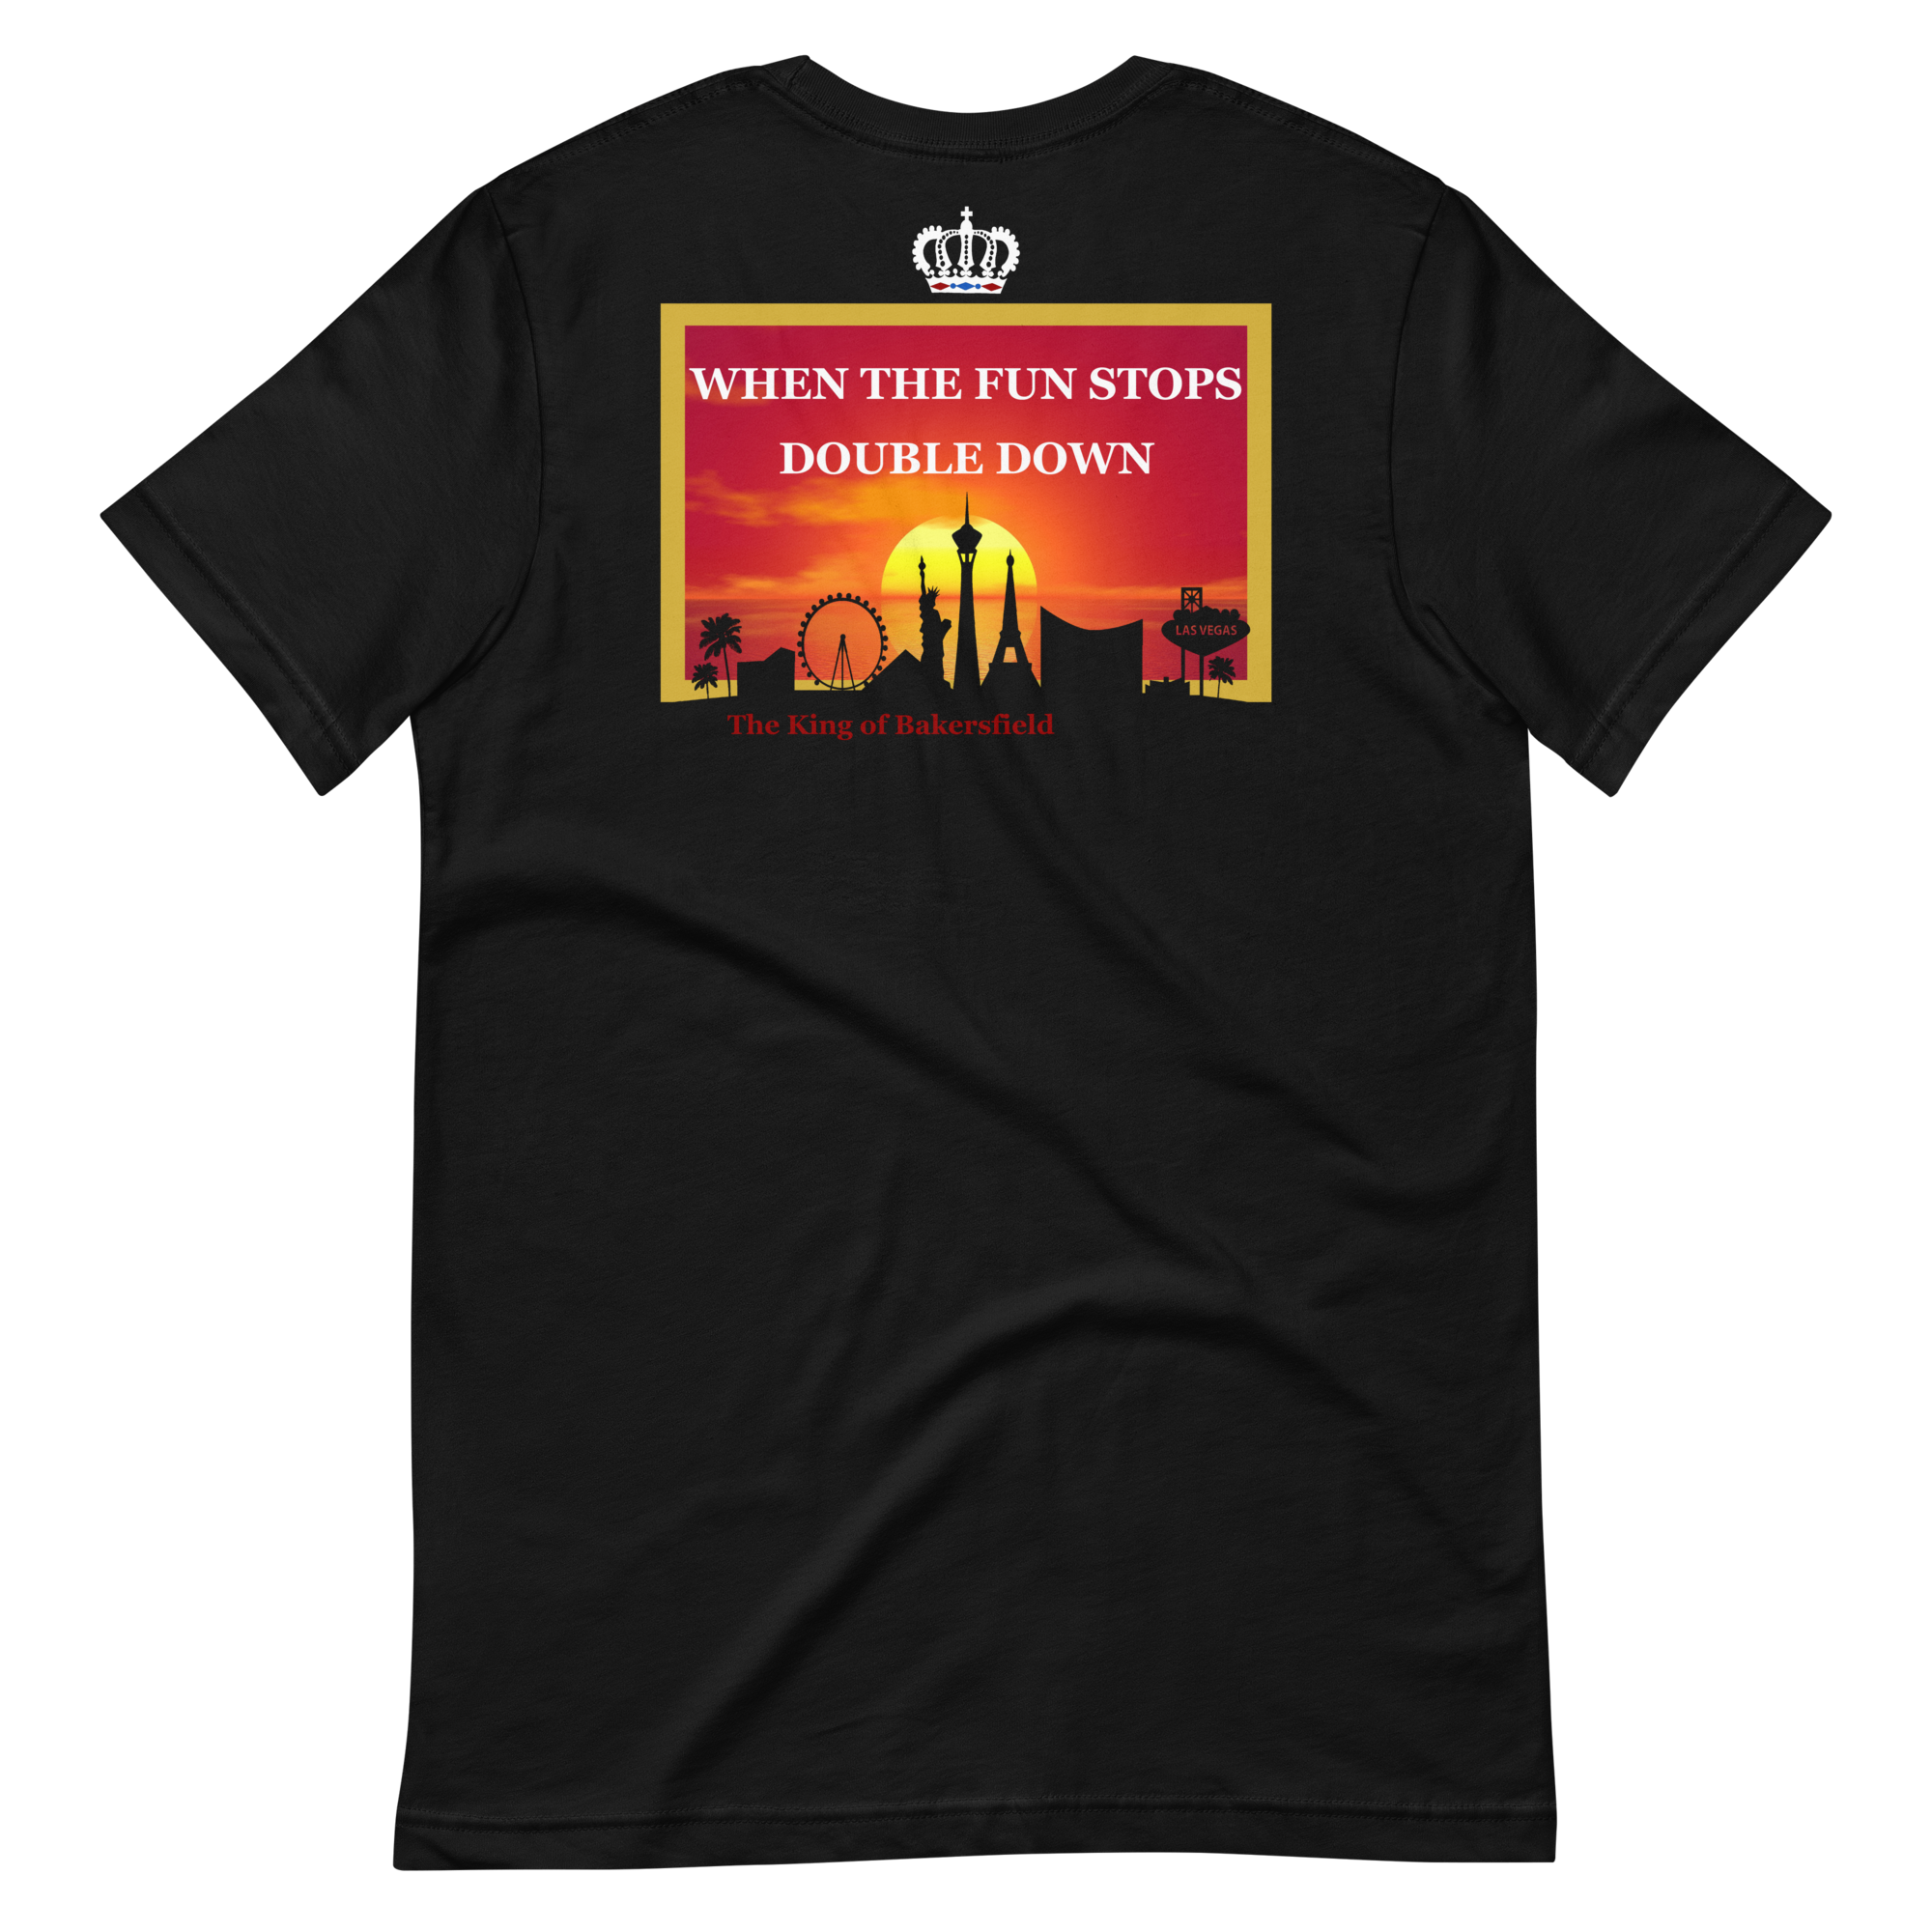 TKOB Gamblers' Lives Matter T-Shirt